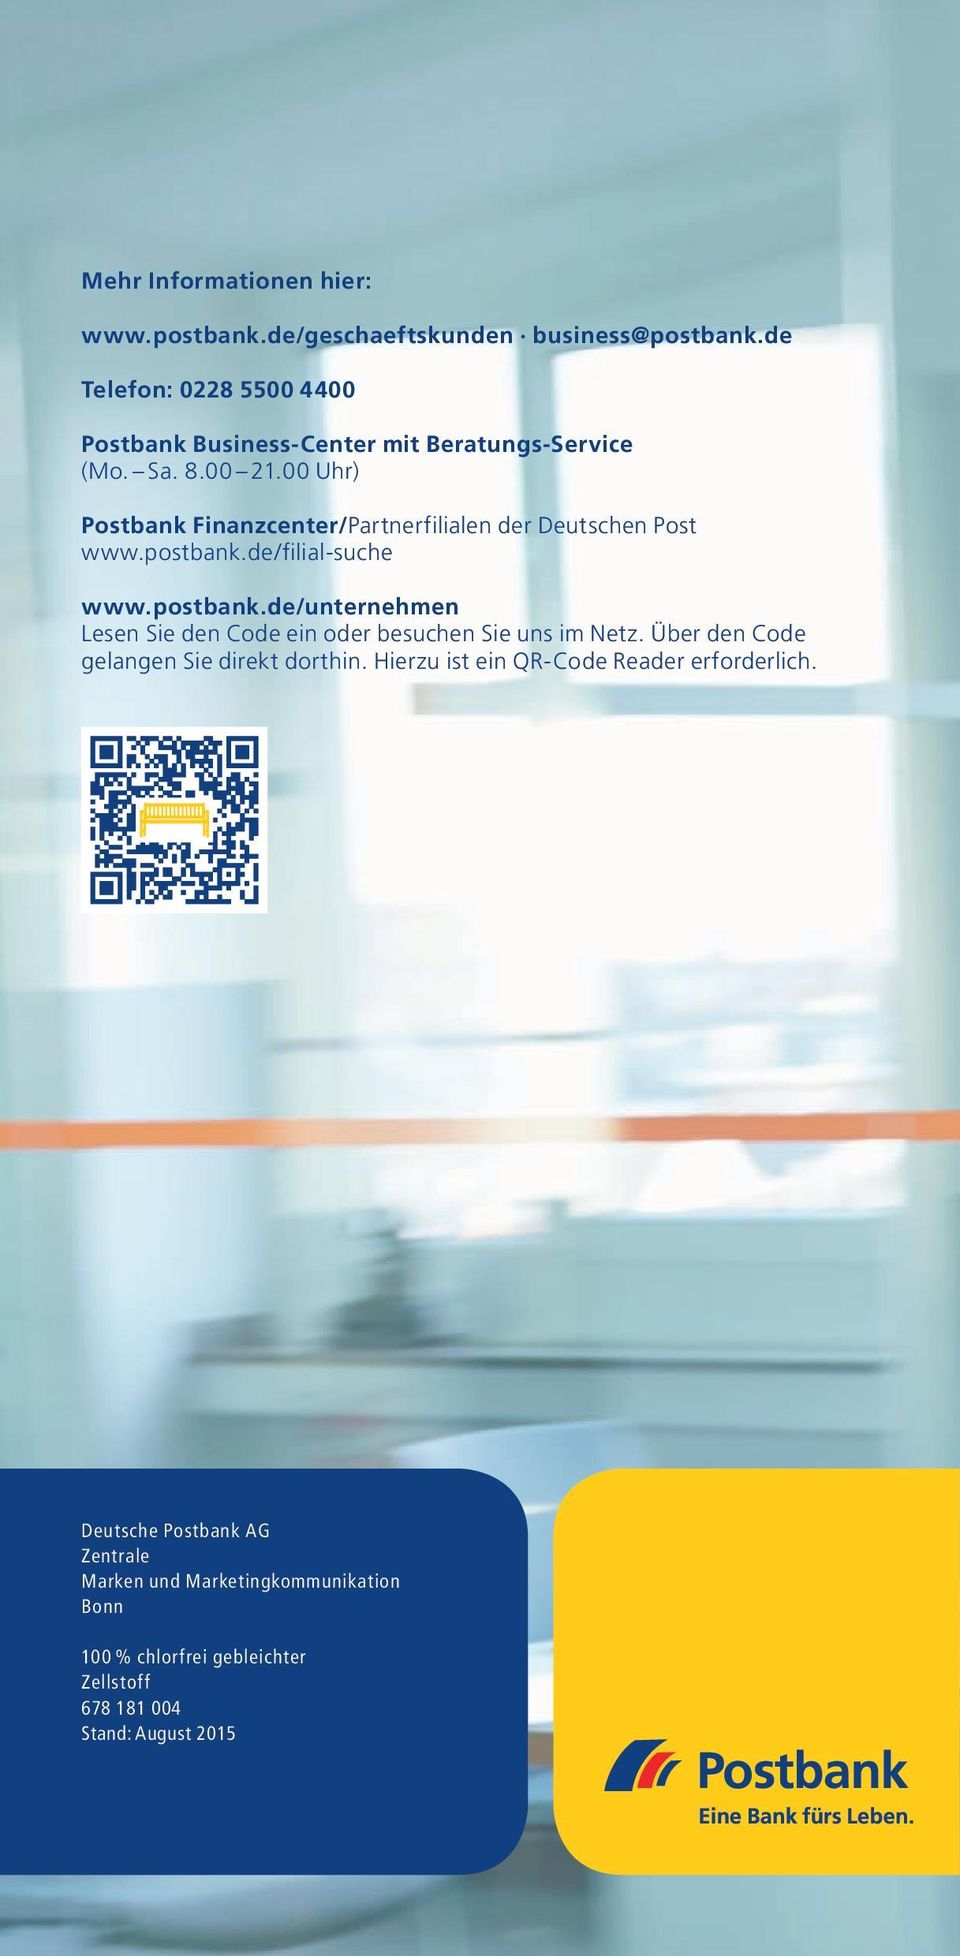 00 Uhr) Postbank Finanzcenter/Partnerfilialen der Deutschen Post www.postbank.